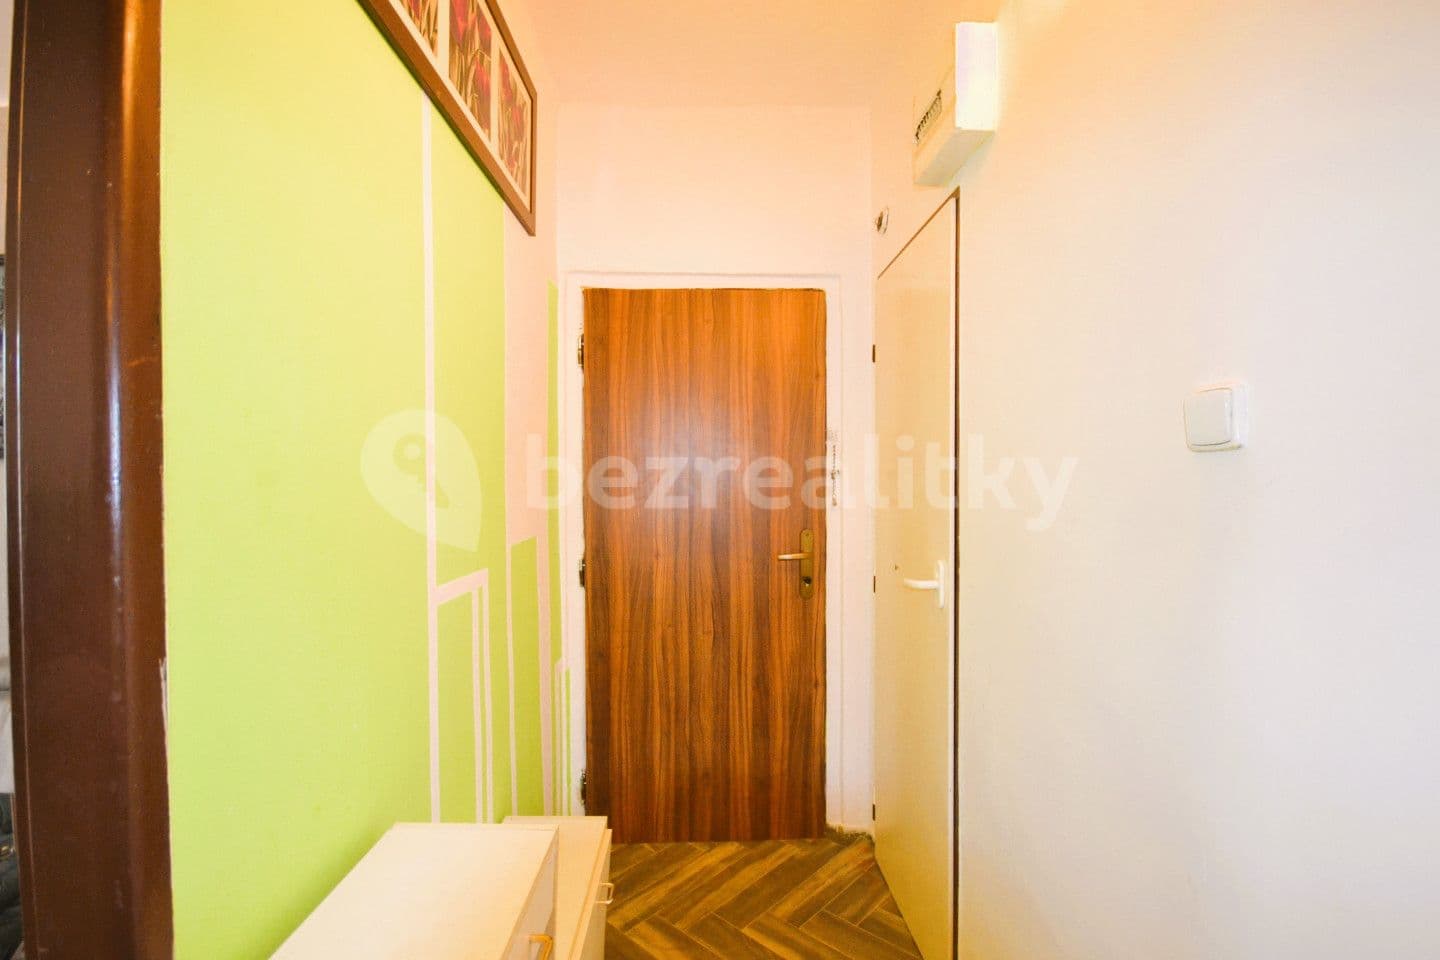 2 bedroom flat for sale, 51 m², Radniční, Tanvald, Liberecký Region